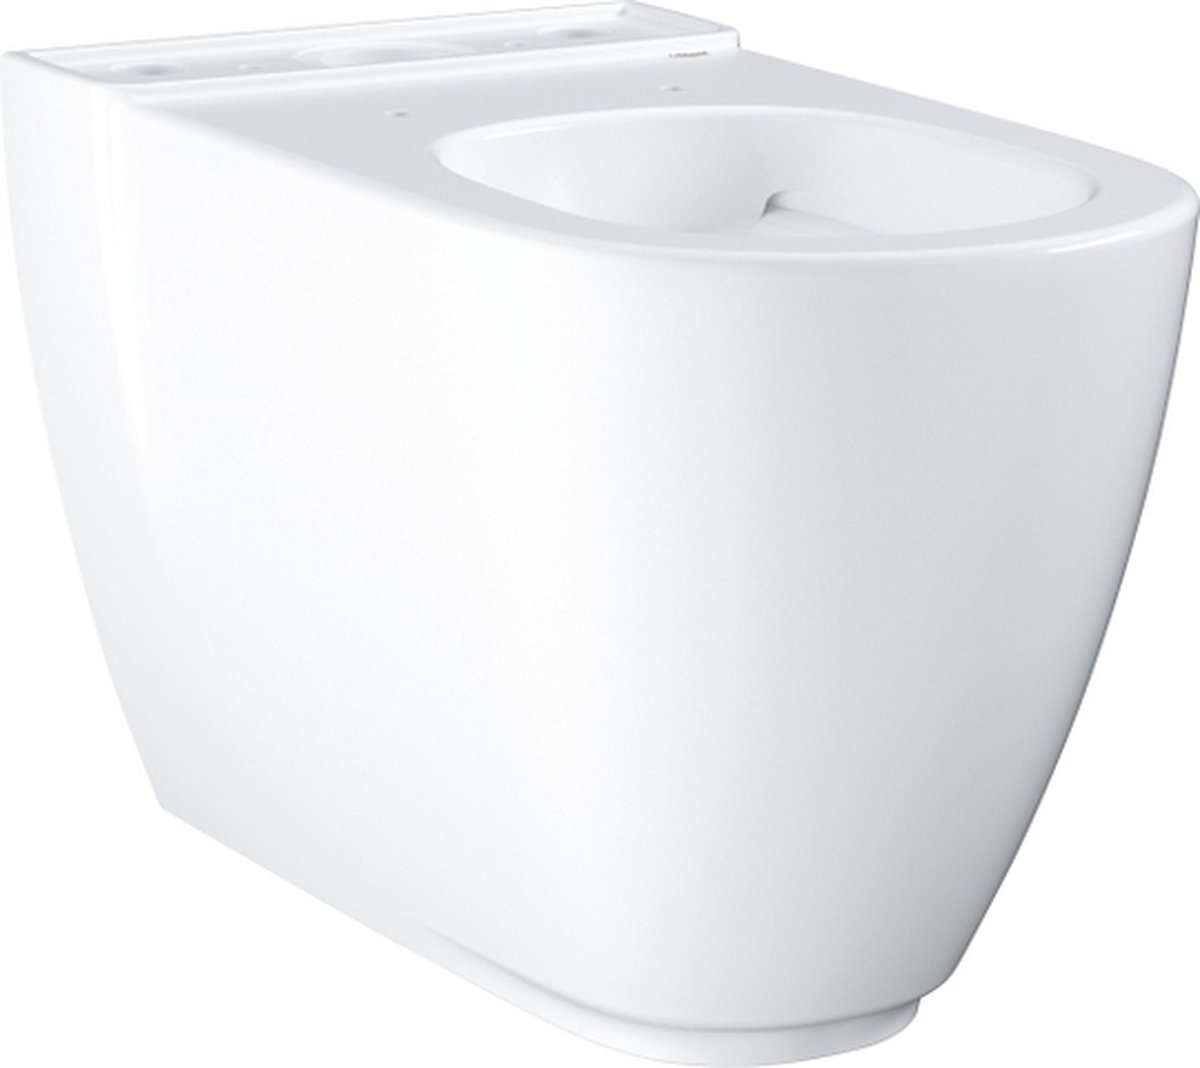 GROHE Essence Ceramic staande wc voor duoblok - Met vuilafstotende afwerking - Wit - GROHE